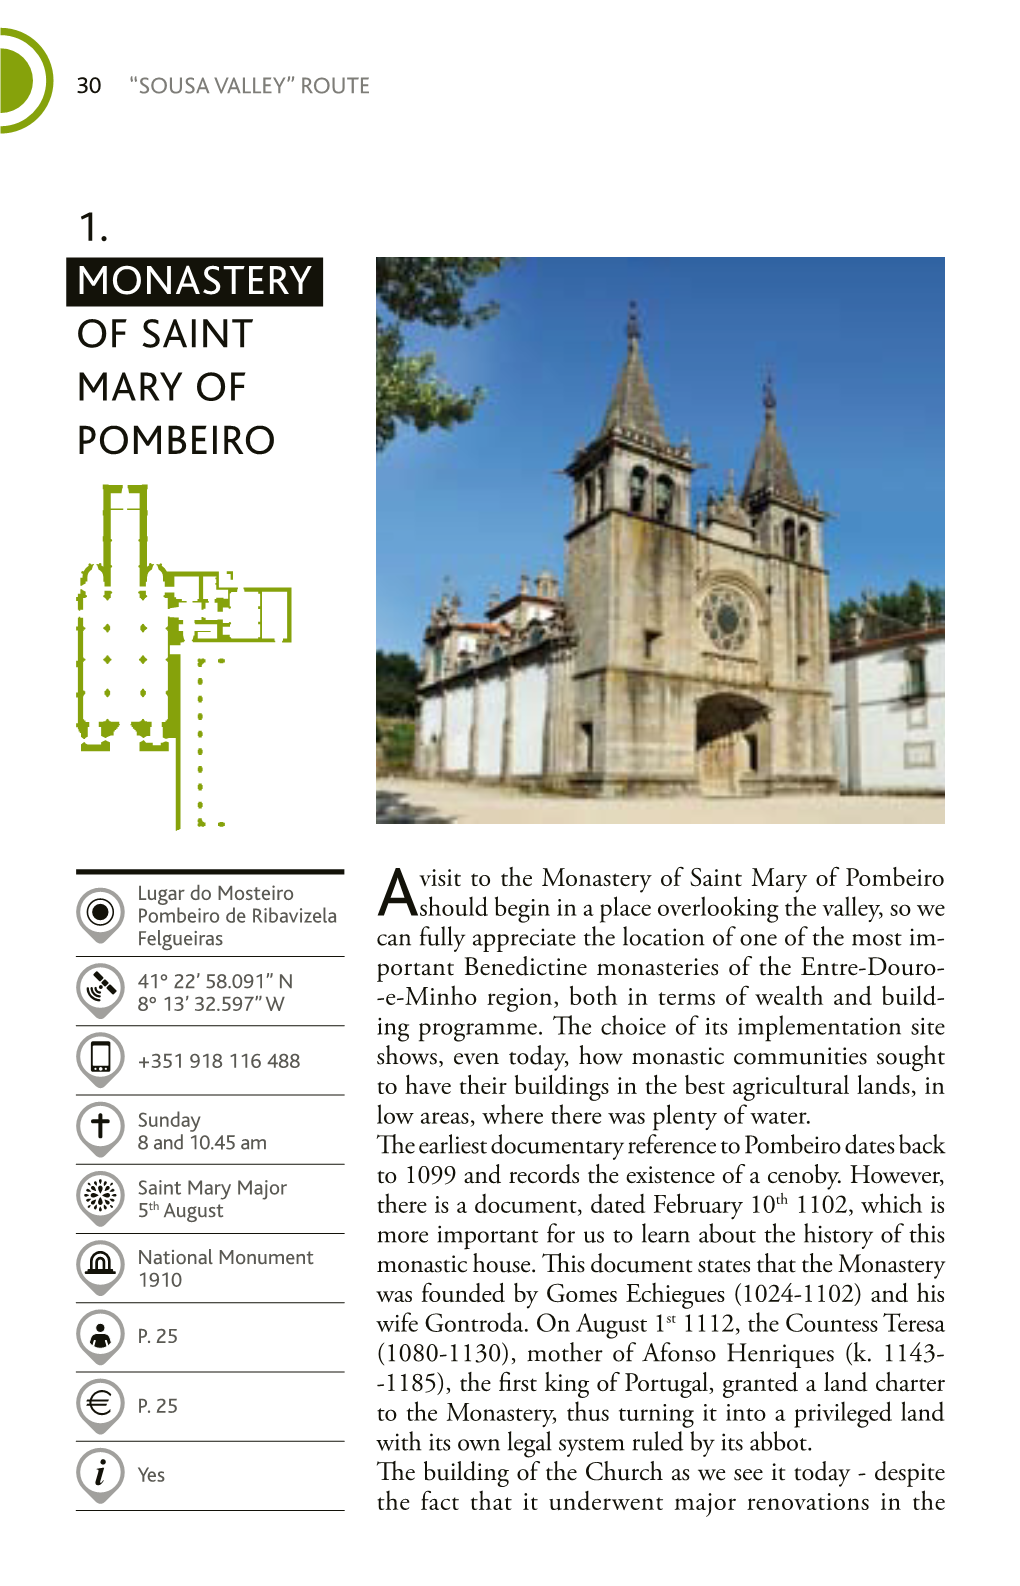 1. Monastery of Saint Mary of Pombeiro